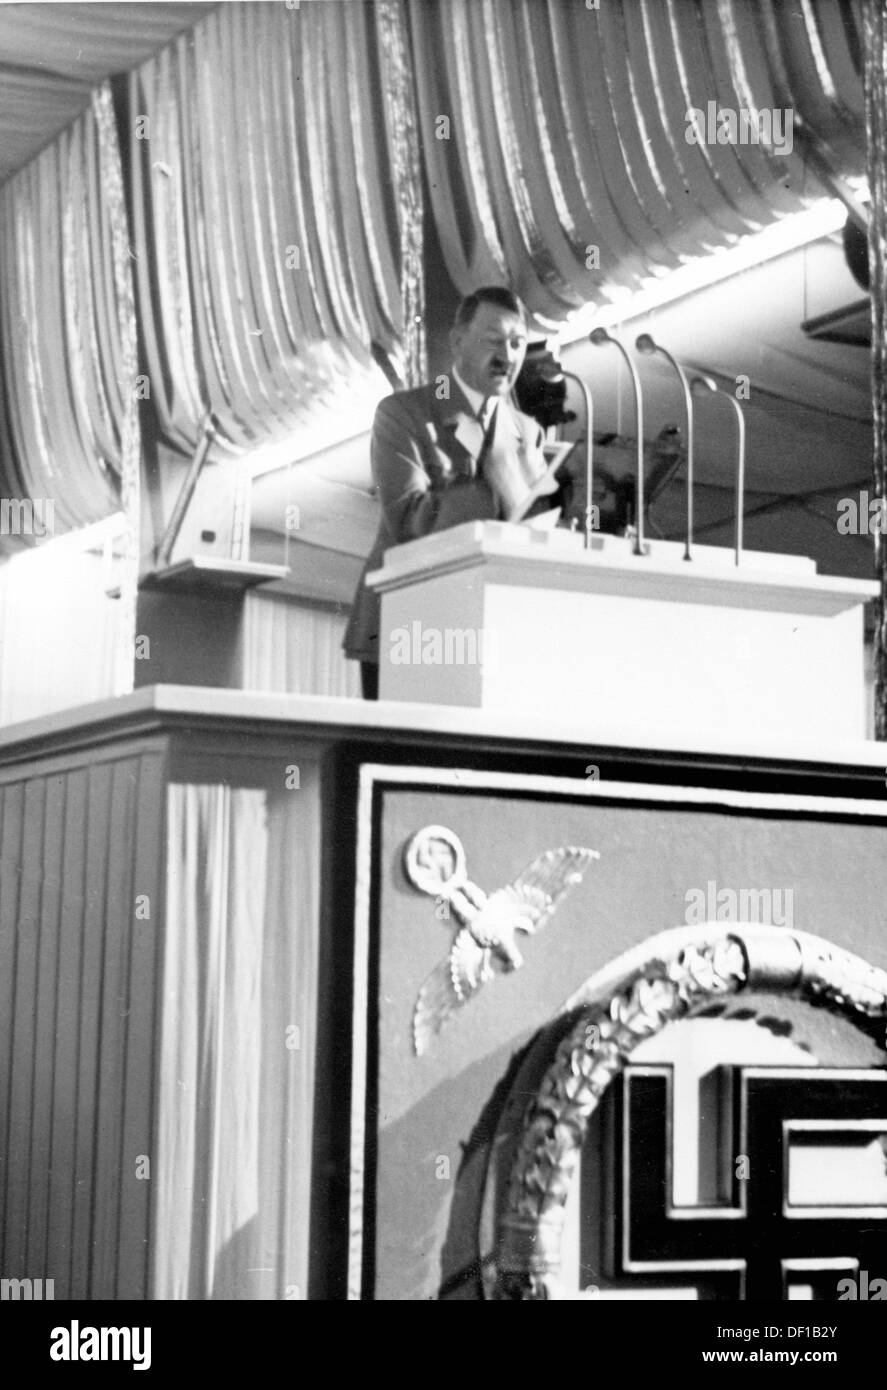 L'image de la propagande nazie! Le chancelier Adolf Hitler prononce un discours sur le dernier congrès du « rassemblement du travail » de Nuremberg sur les lieux de rassemblement de Nuremberg, en Allemagne, le 13 septembre 1937. Fotoarchiv für Zeitgeschichte Banque D'Images